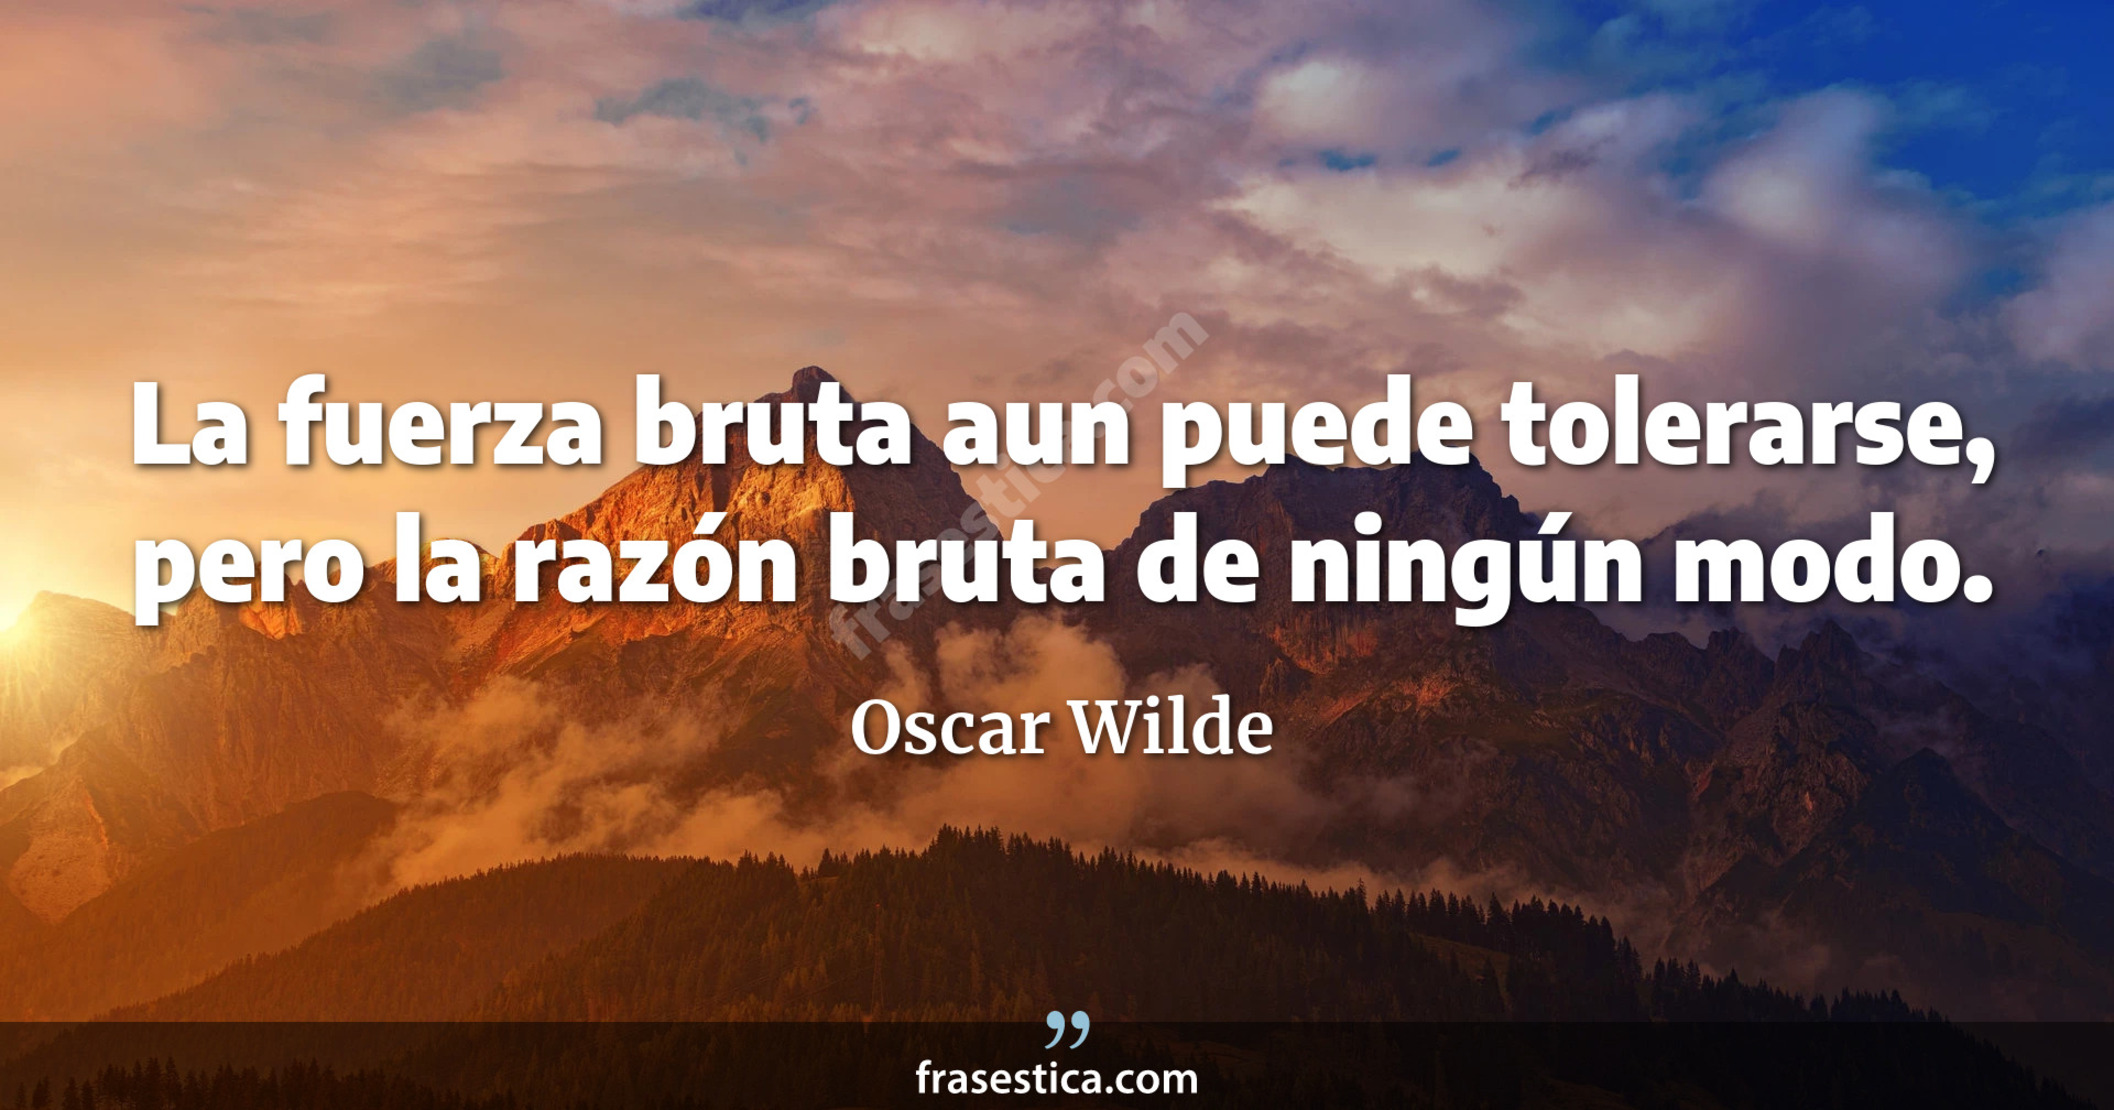 La fuerza bruta aun puede tolerarse, pero la razón bruta de ningún modo. - Oscar Wilde